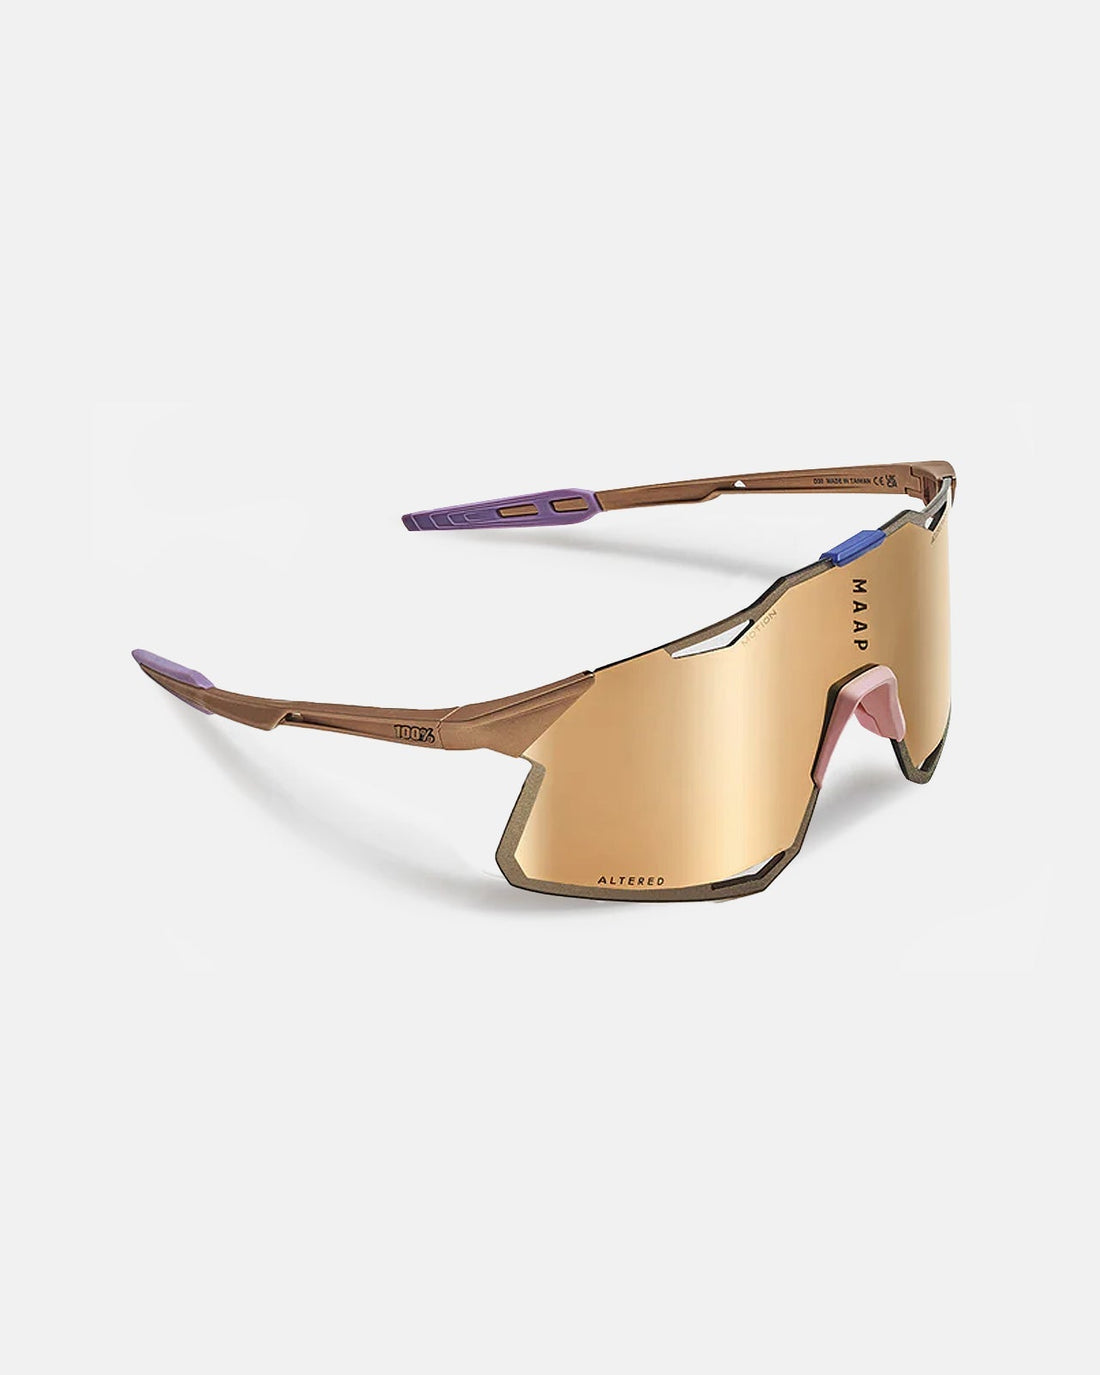 MAAP x 100% Hypercraft Sunglasses - Copper - MAAP